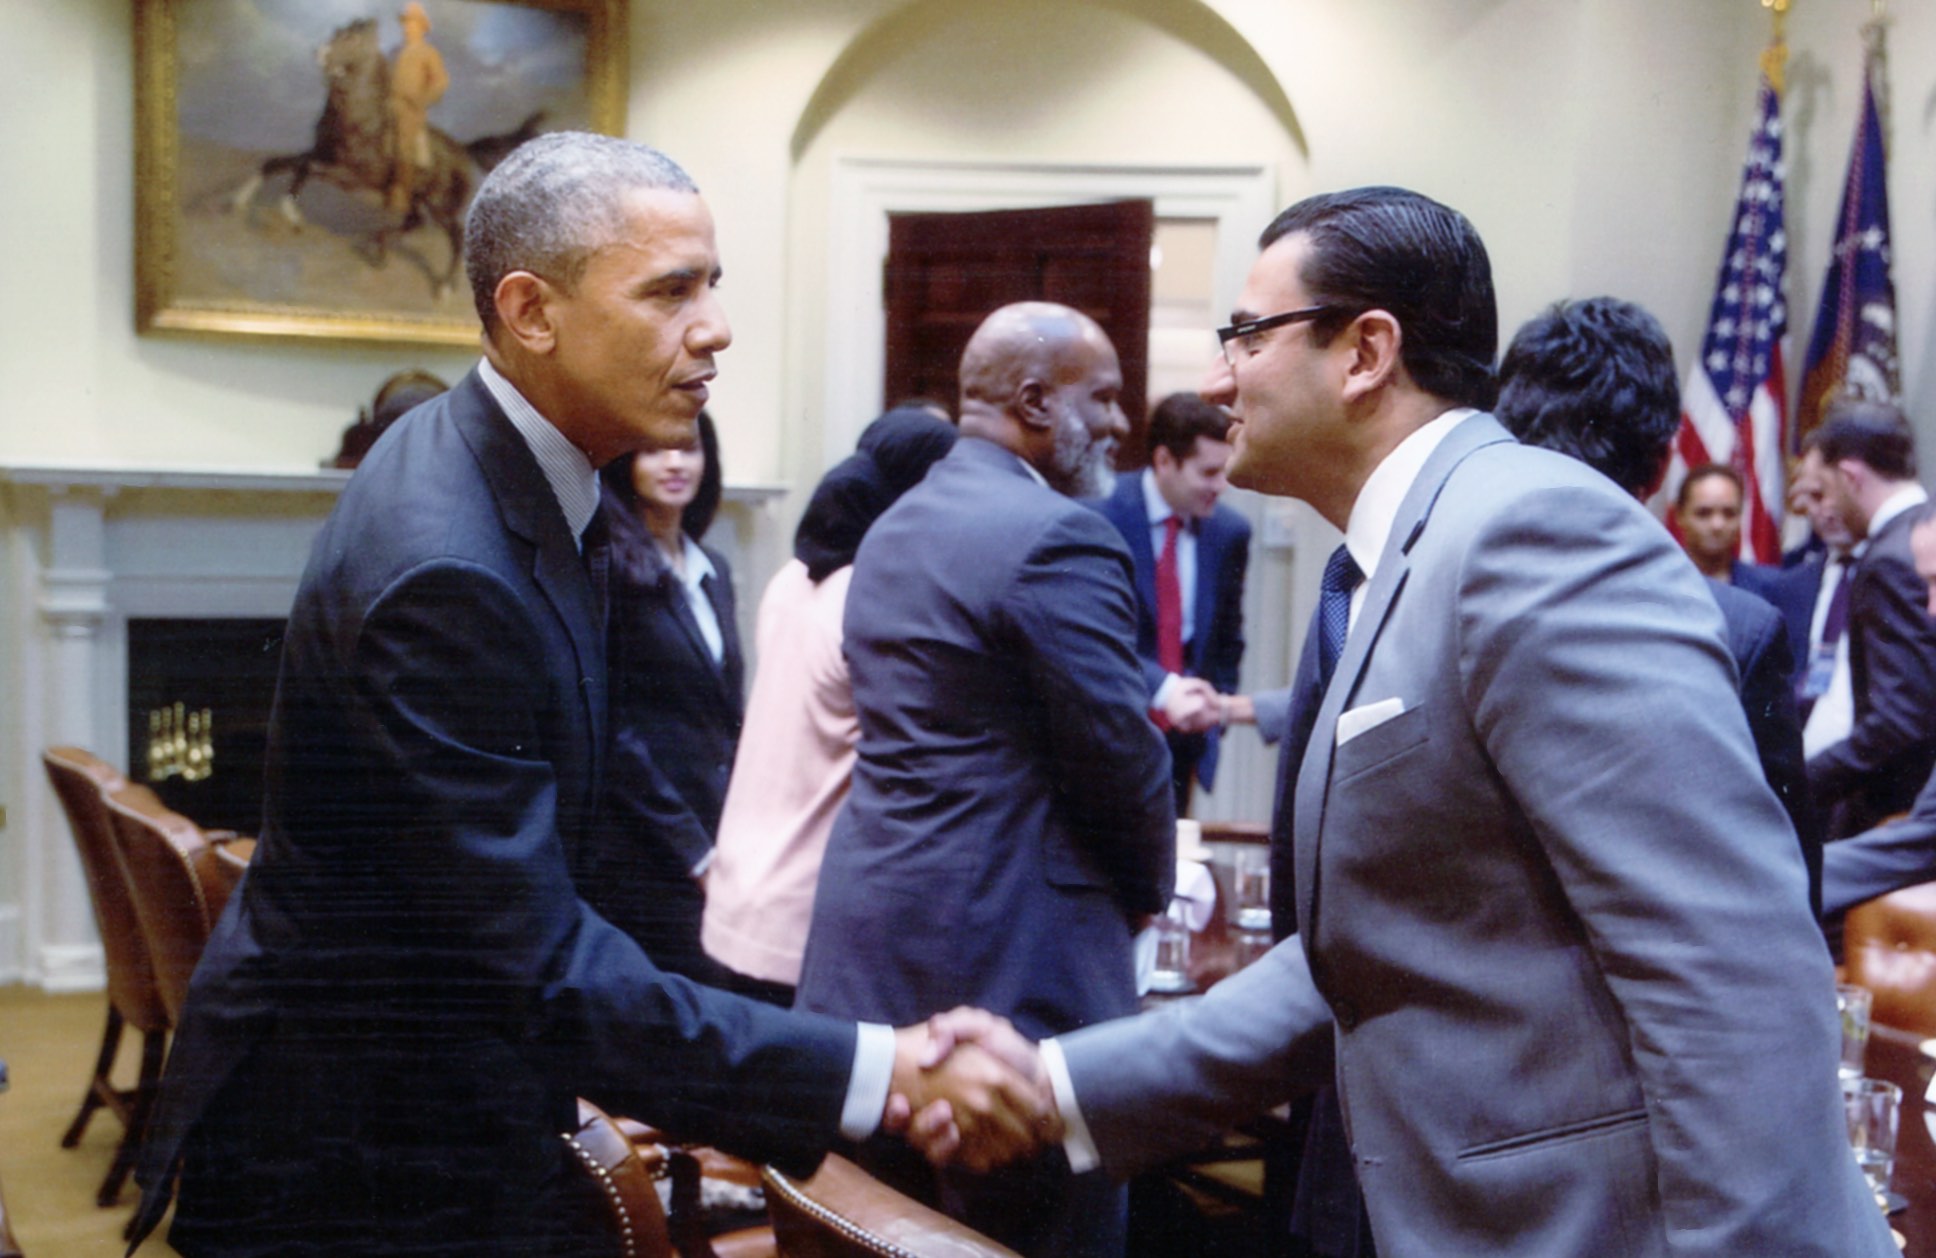 Former President Barack Obama shaking hands with Farhan Latif